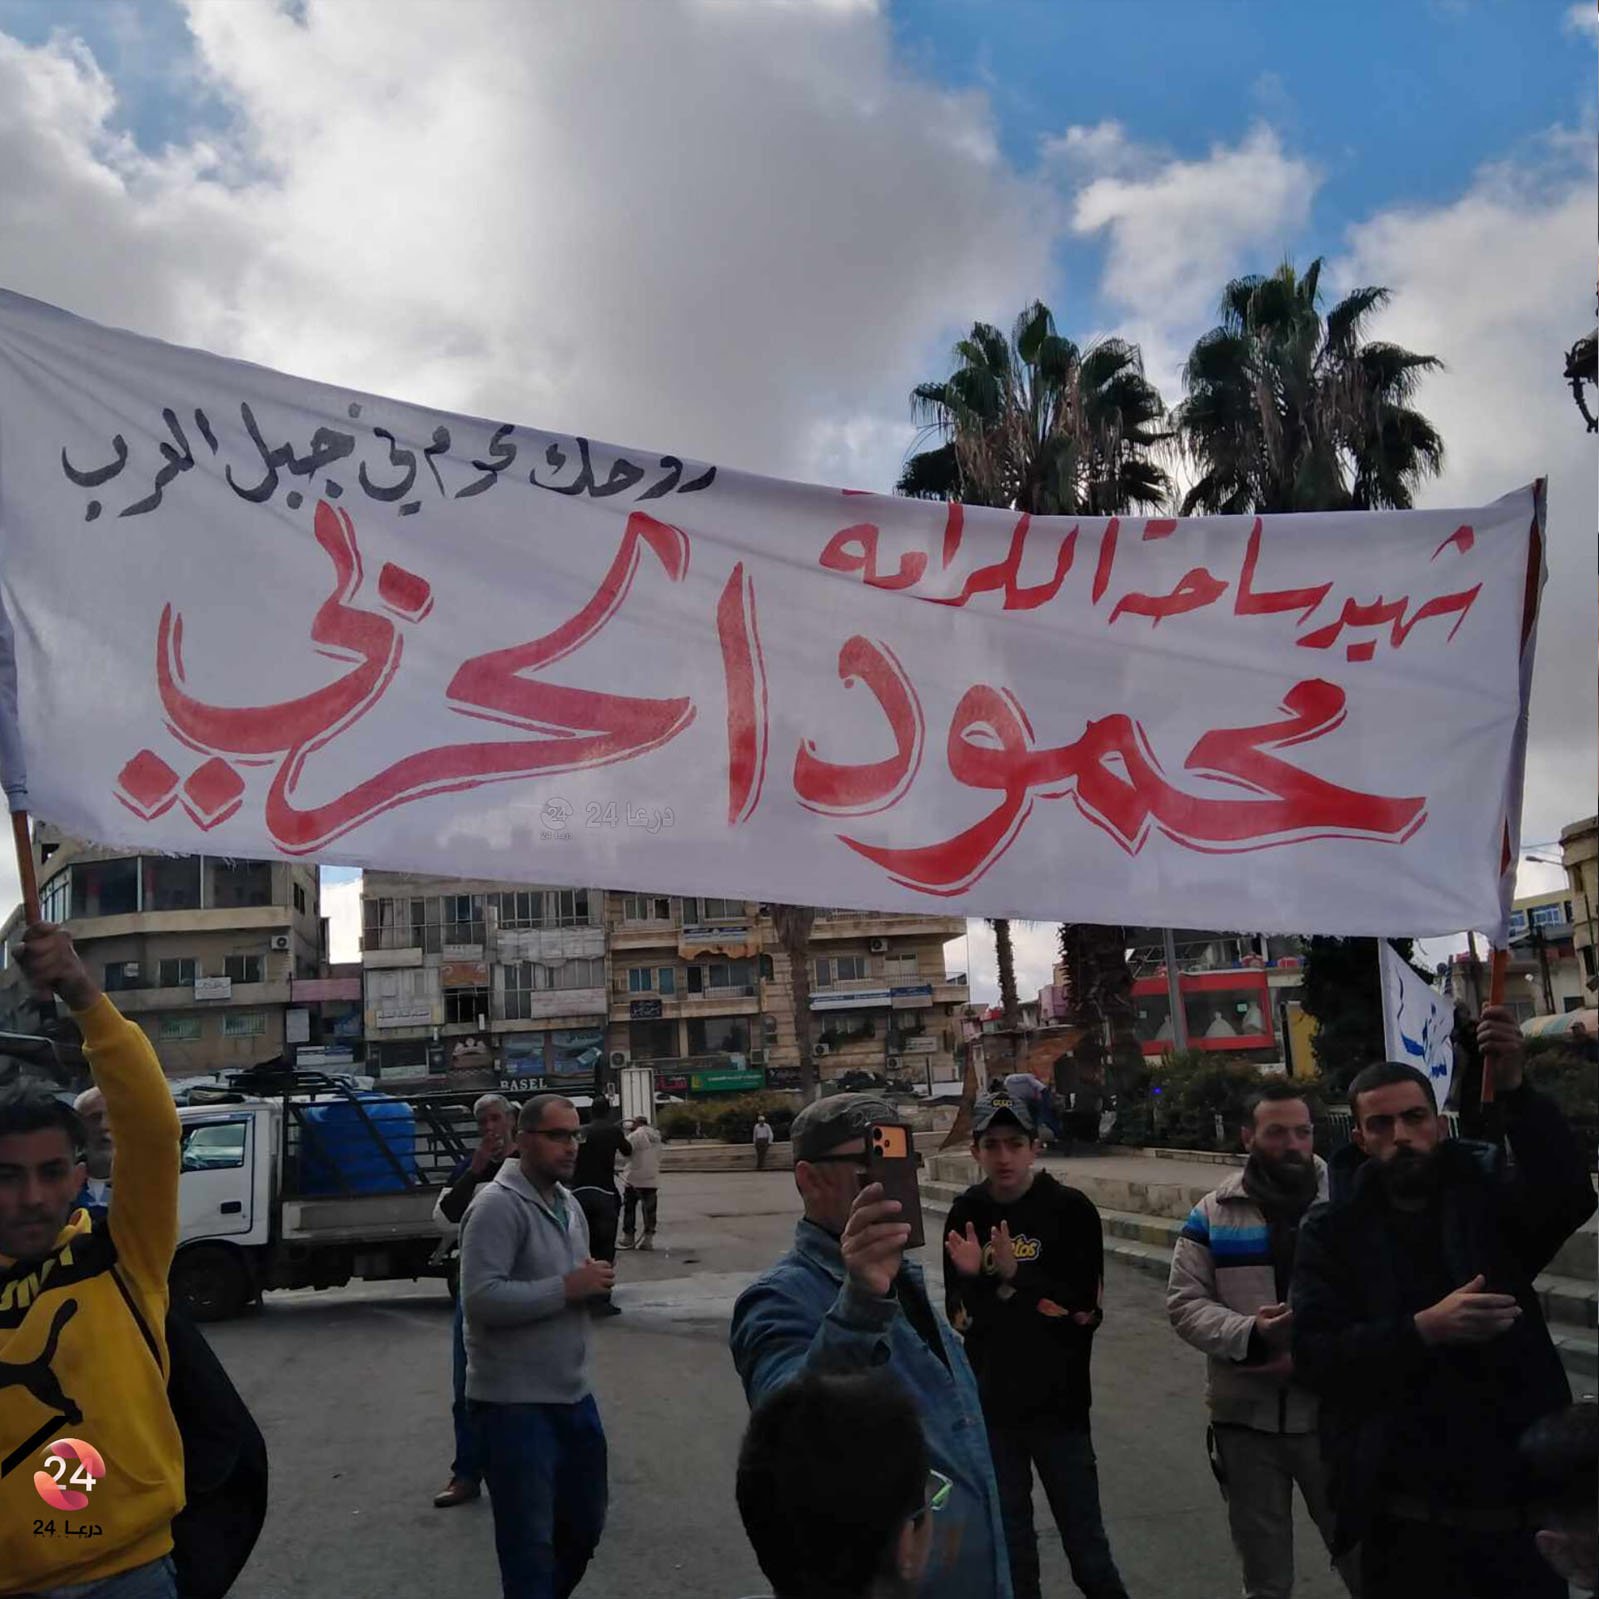 محمود الحربي شهيد ساحة الكرامة، من اللافتات التي رُفعت في ساحة الكرامة في مدينة السويداء